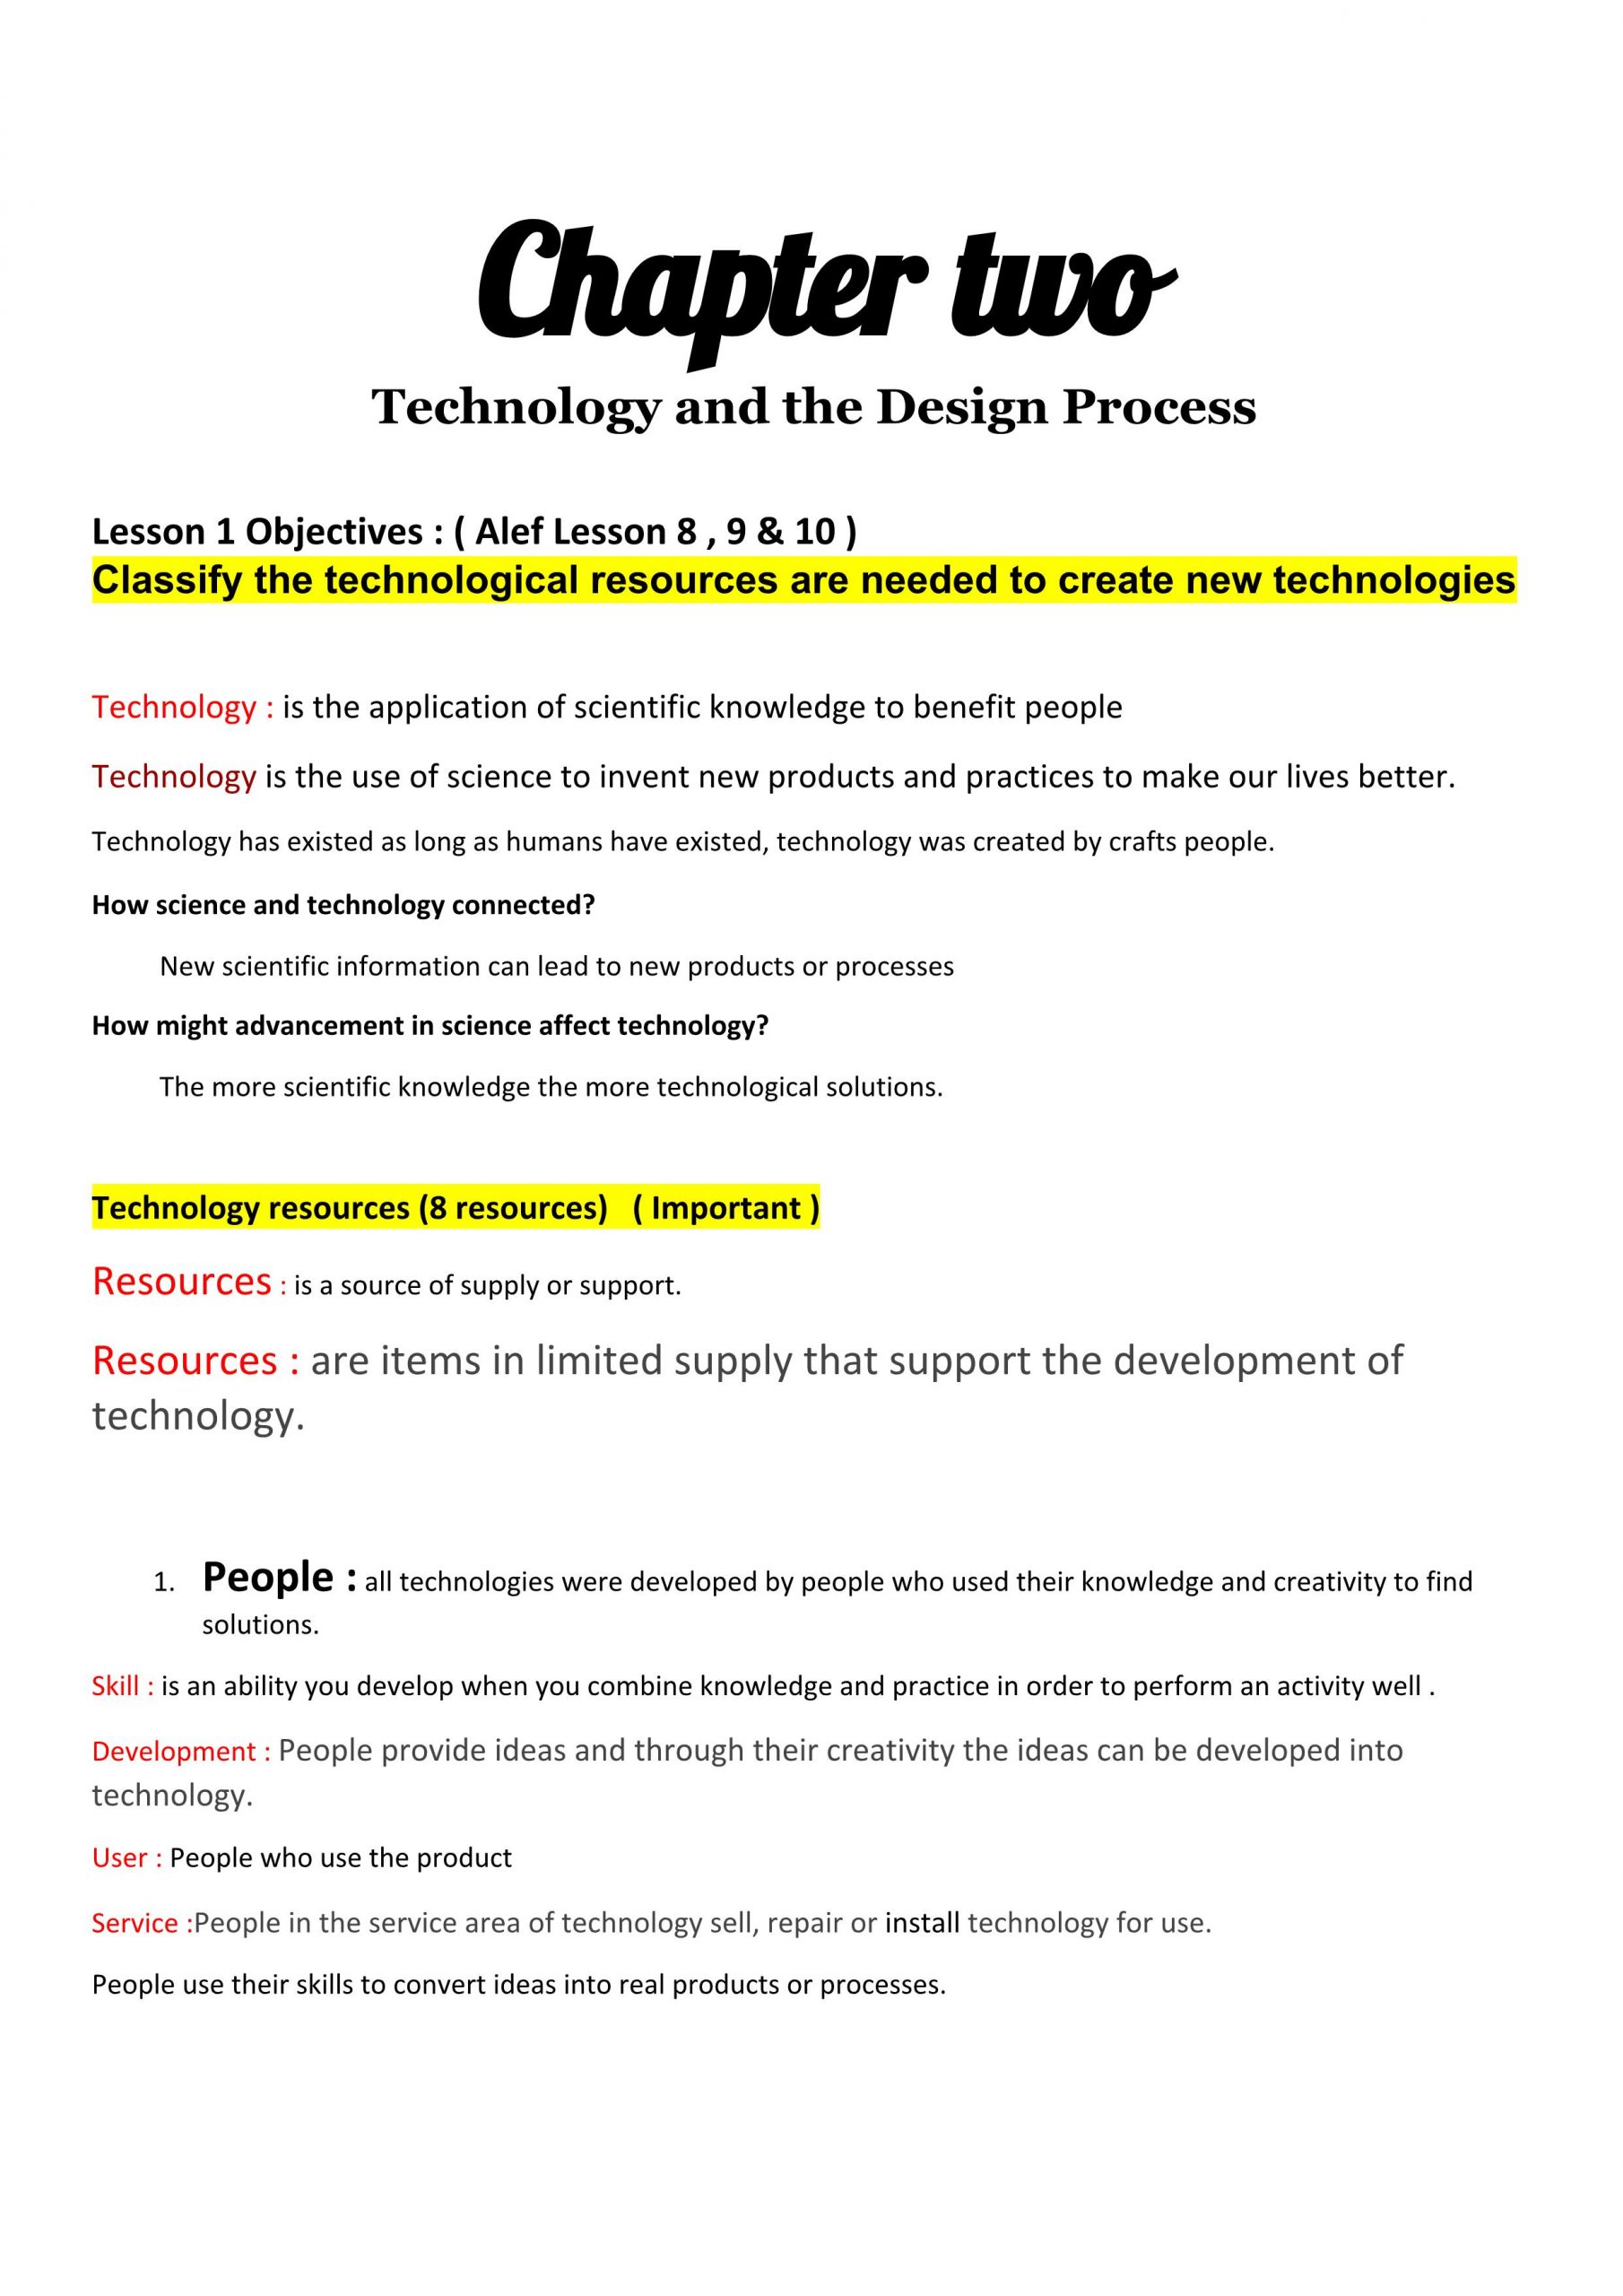 ملخص Technology and the Design Process بالانجليزي الصف السادس مادة العلوم المتكاملة